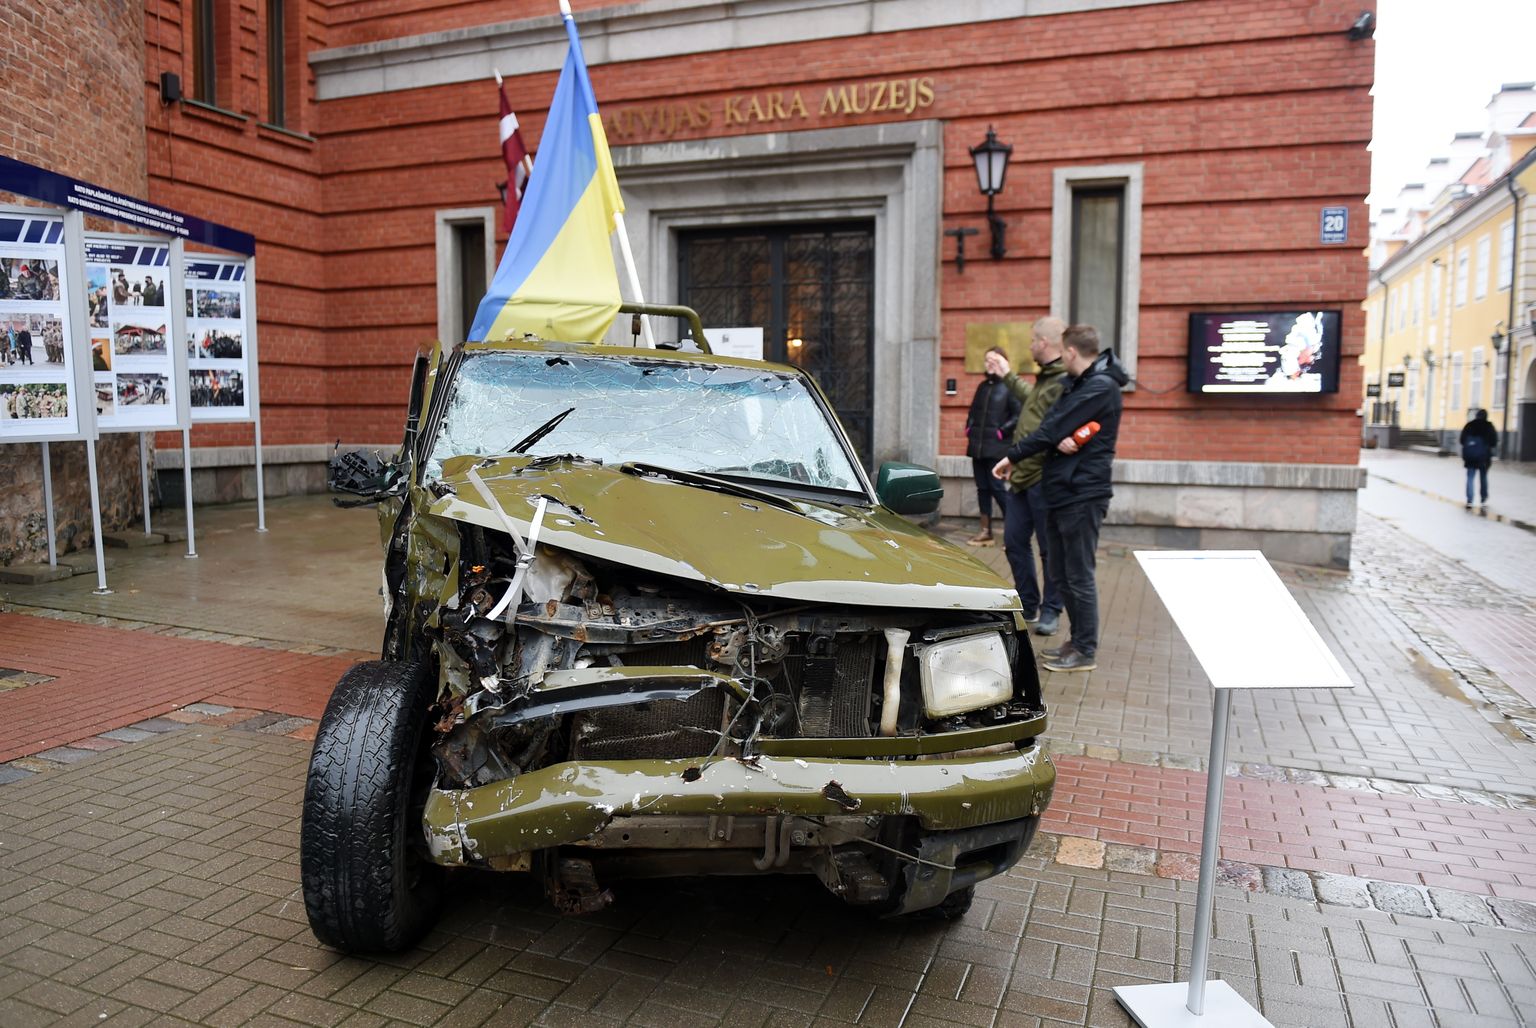 Pie Latvijas Kara muzeja apskatāms viens no akcijā  "Twitter konvojs" ziedotajiem apvidus auto "Orļiks", ko Ukrainas bruņoto spēku karavīri izmantojuši, lai uzvarētu kaujas pret Krievijas okupācijas spēkiem.